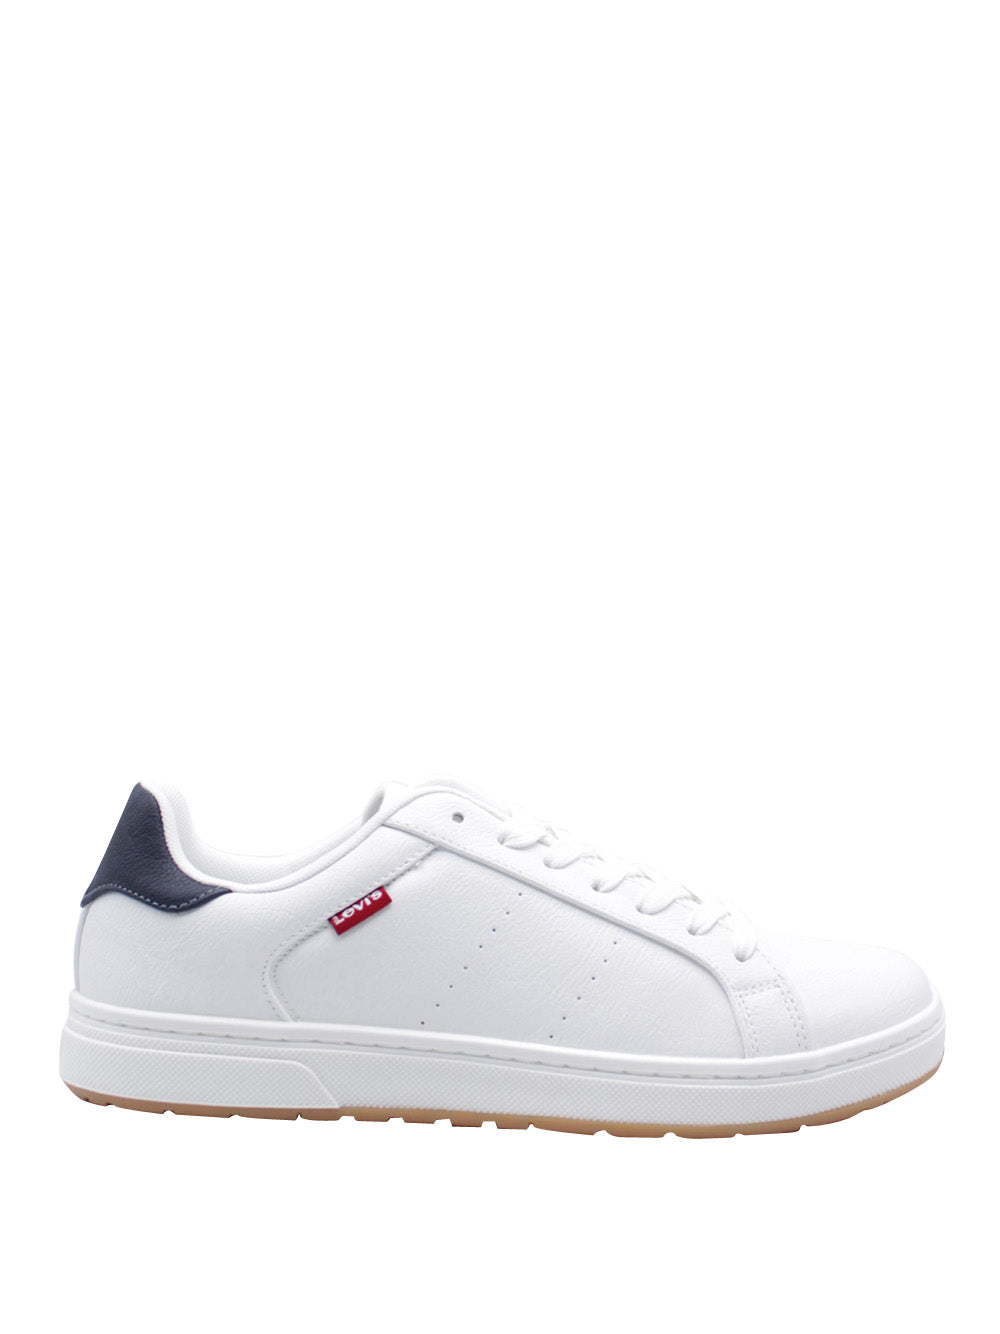 LEVI'S Sneakers Uomo - Bianco modello 234234-661_12M4